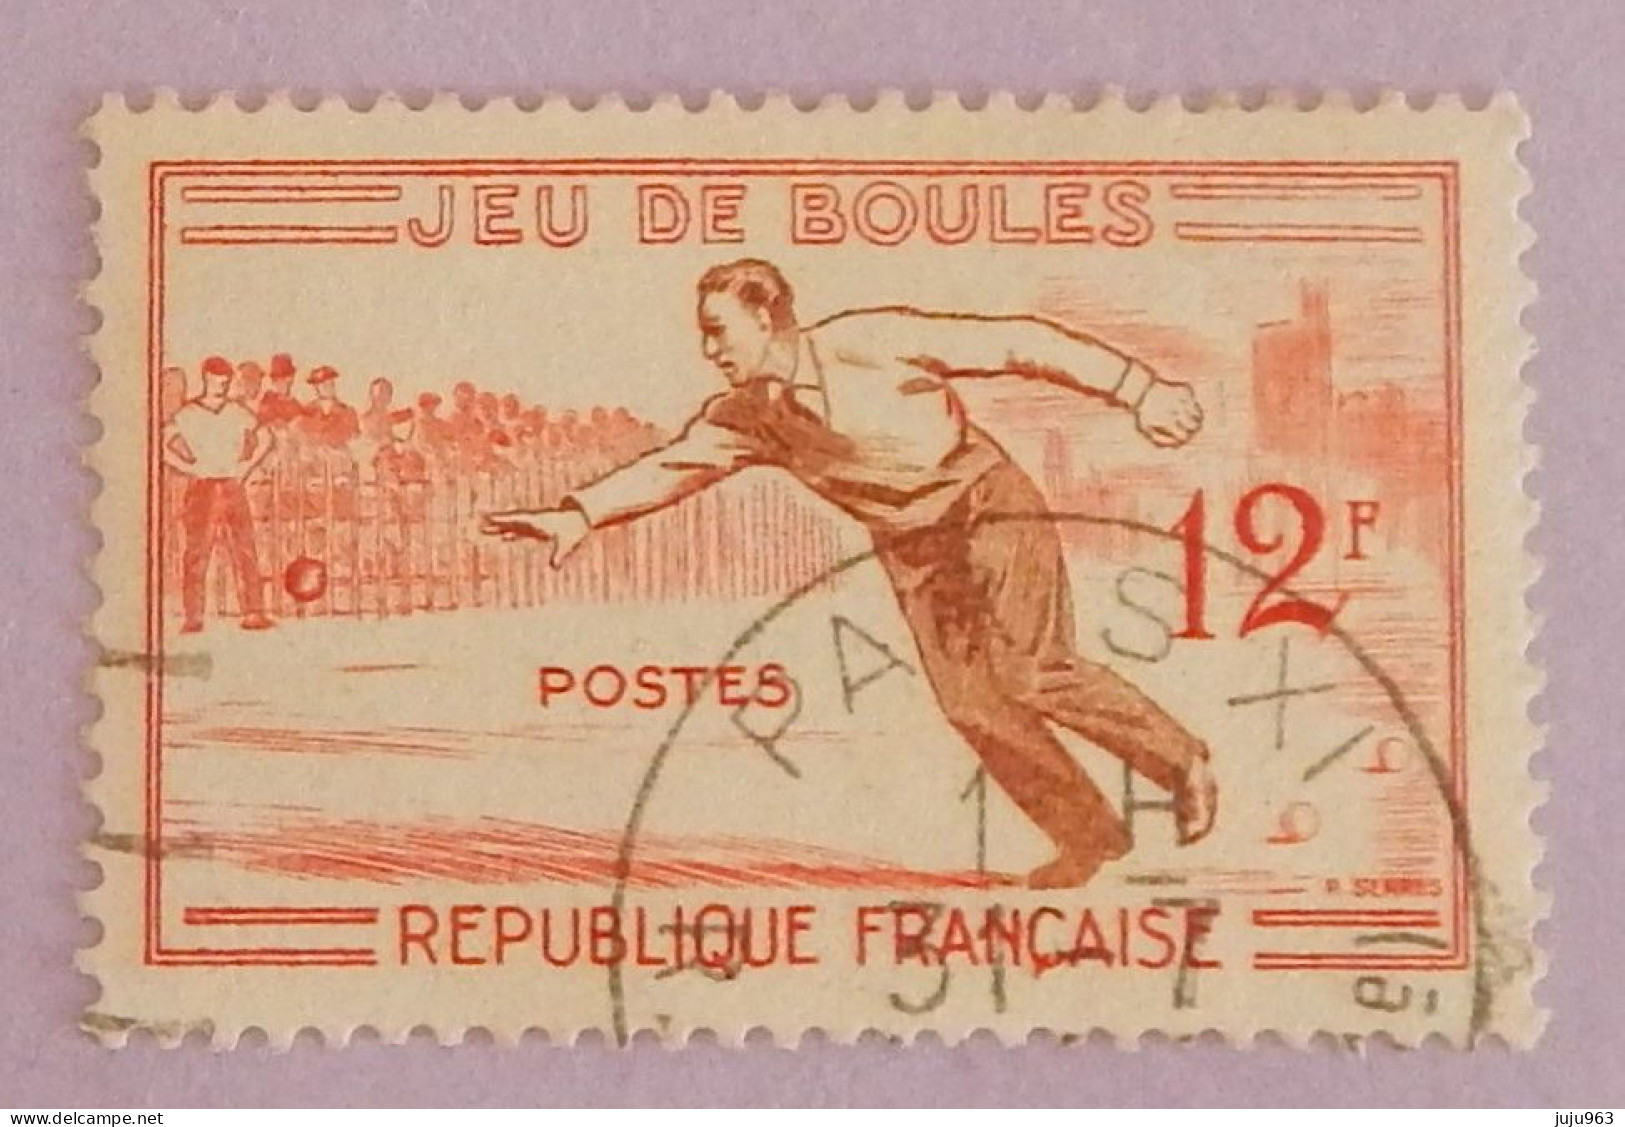 FRANCE YT 1161 CACHET ROND "JEU DE BOULES" ANNÉE 1958 - Oblitérés